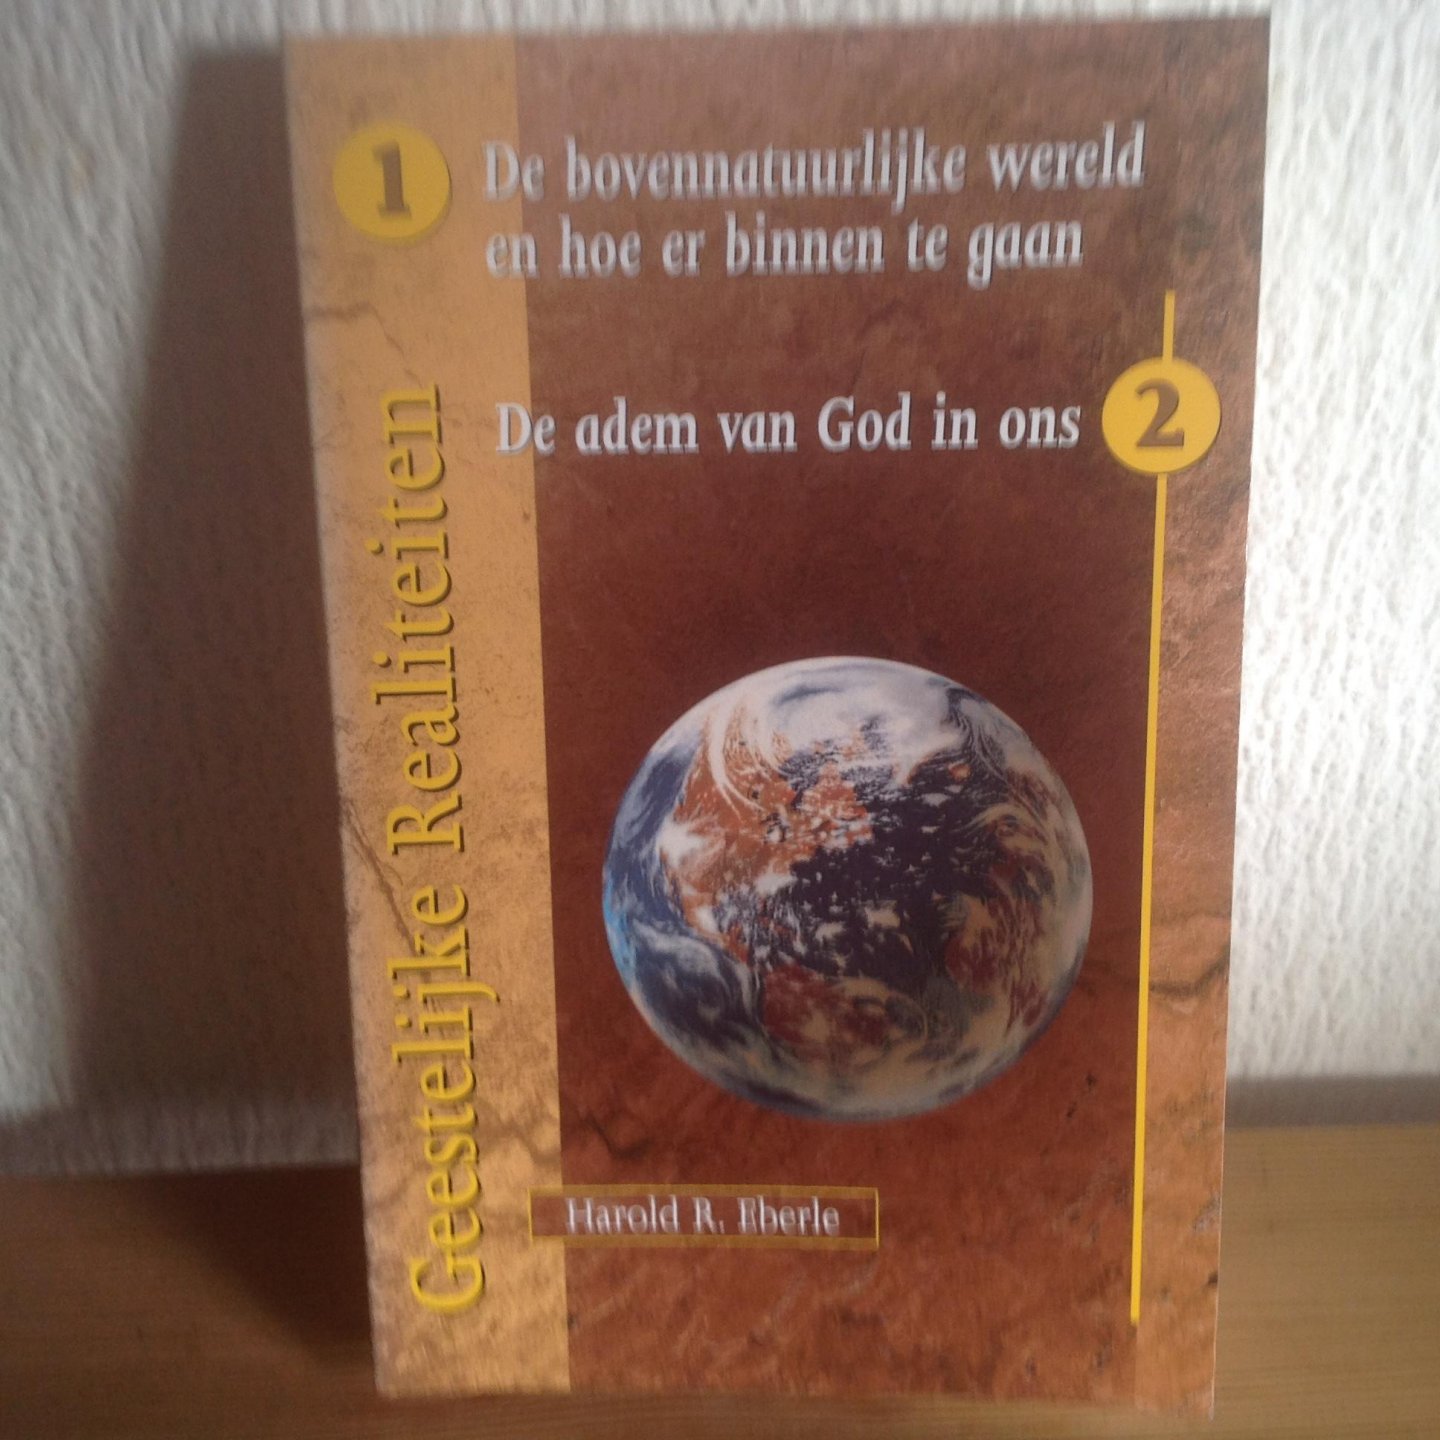 Eberle, Harold R. - Geestelijke realiteiten de bovennatuurlijke wereld en hoe er binnen te gaan/ de adem van God in ons